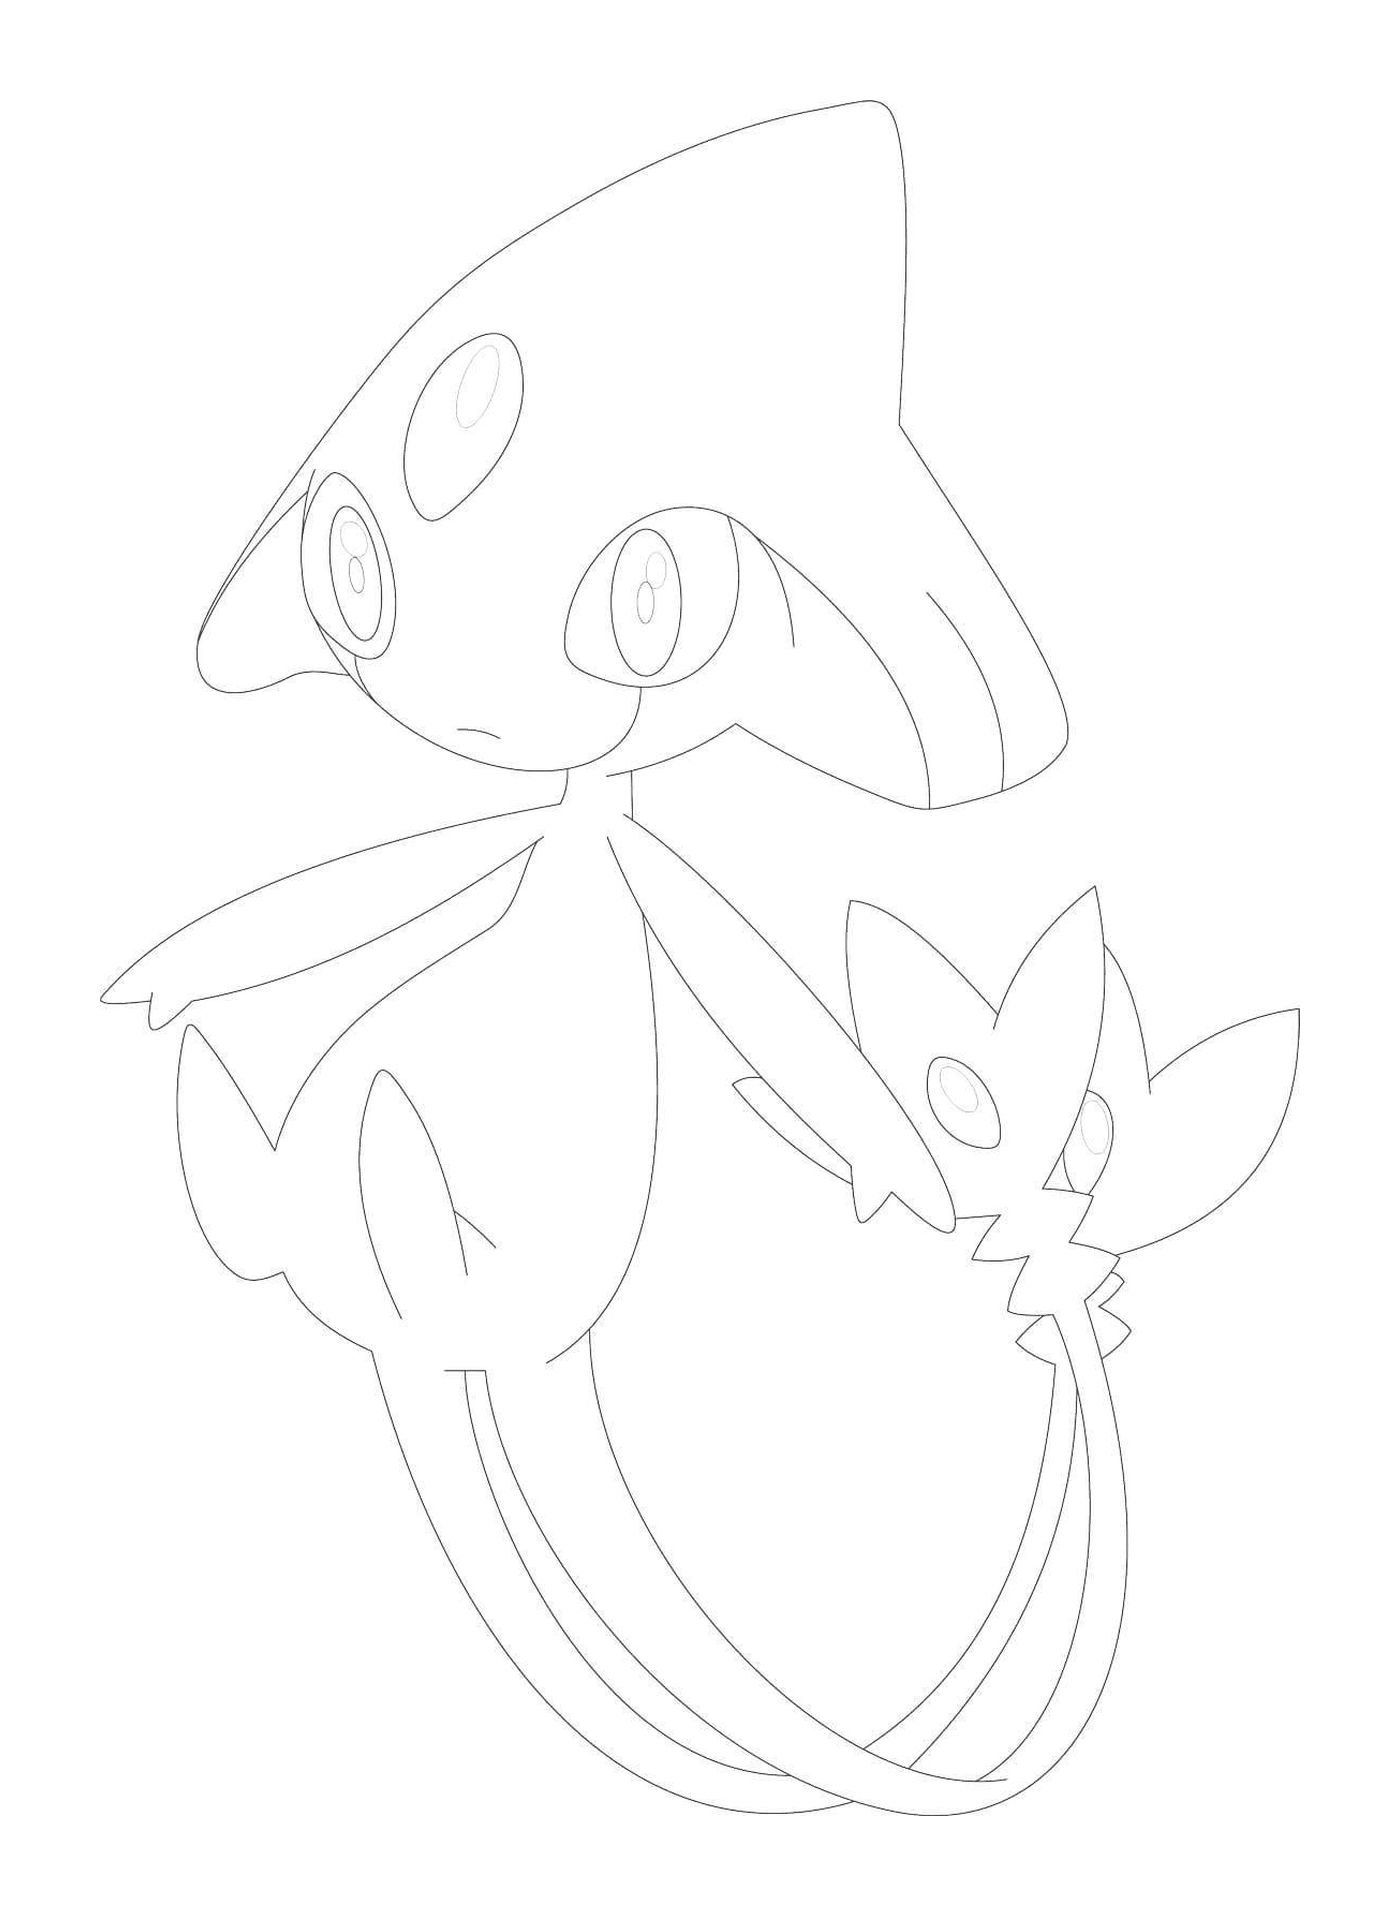   Créfadet Pokémon dessiné 